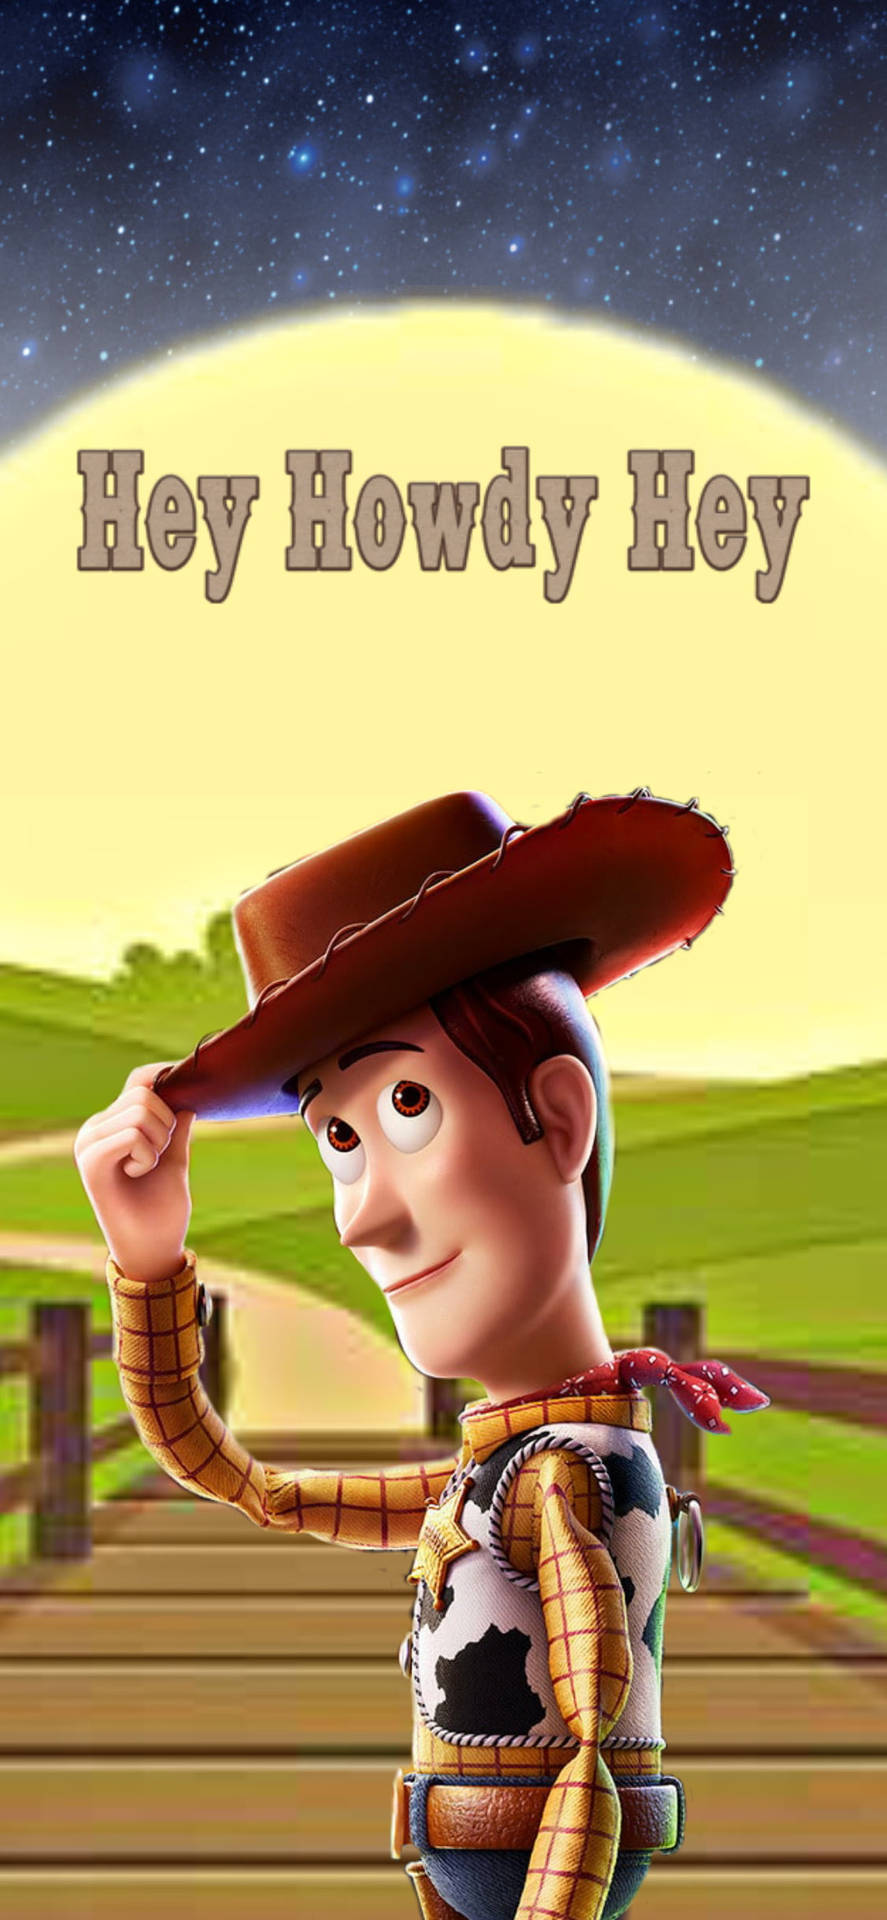 3dbehang För Datorn Eller Mobilen Med Sheriff Woody Från Toy Story 3. Wallpaper